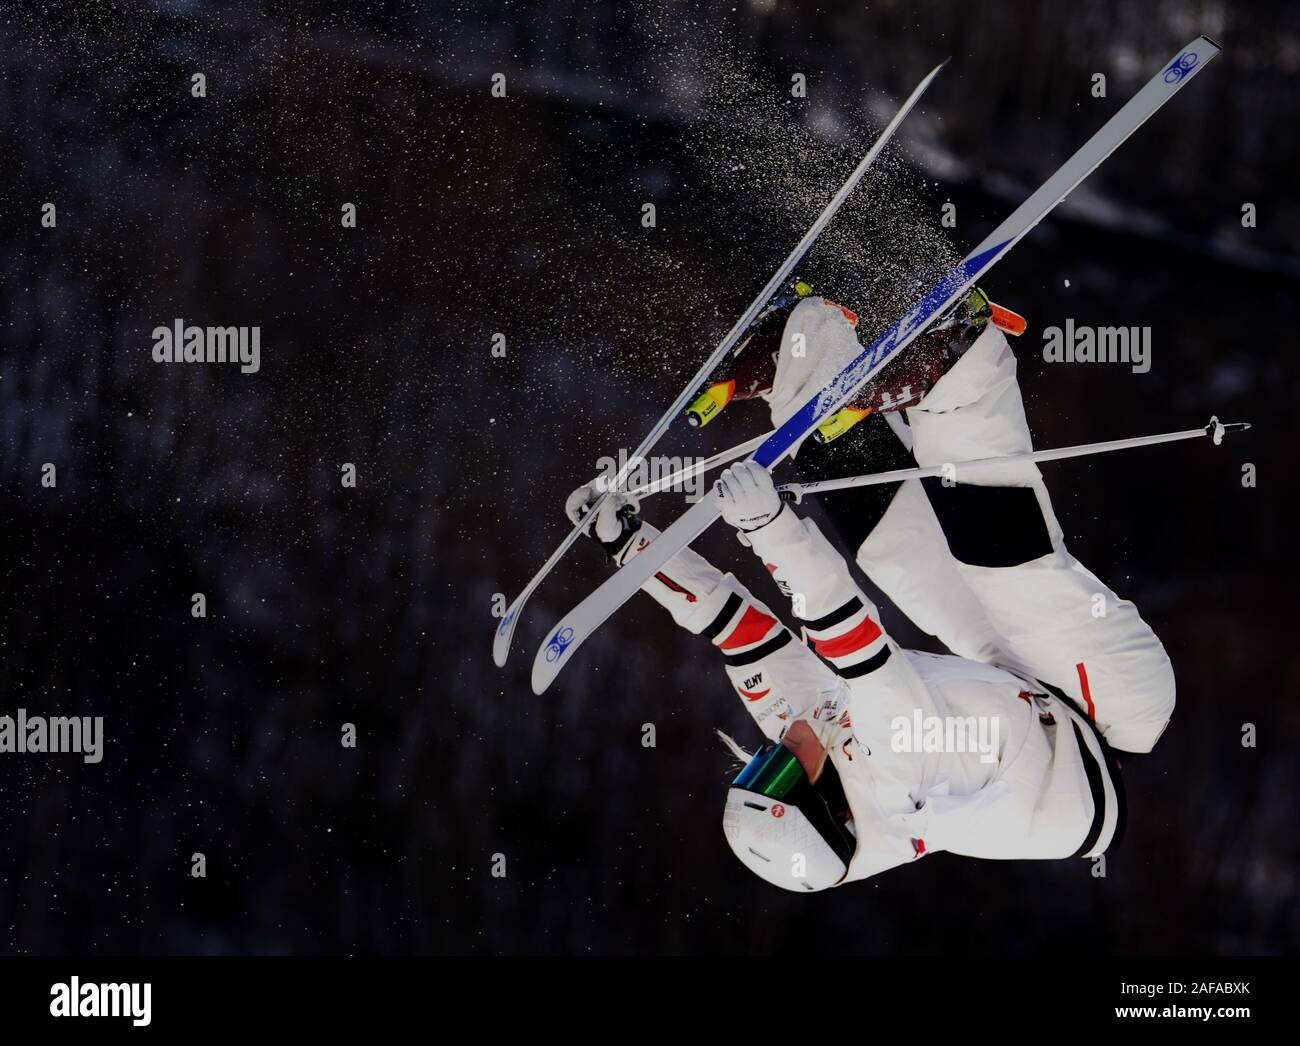 (191214) - CHONGLI, Dez. 14, 2019 (Xinhua) - Justine Dufour-Lapointe von Kanada konkurriert während moguls Finale bei den 2019-2020 Thaiwoo FIS Freestyle Ski Buckelpiste Wm in Chongli, im Norden der chinesischen Provinz Hebei, Dez. 14, 2019 bei den Frauen. (Xinhua / Yang Shiyao) Stockfoto